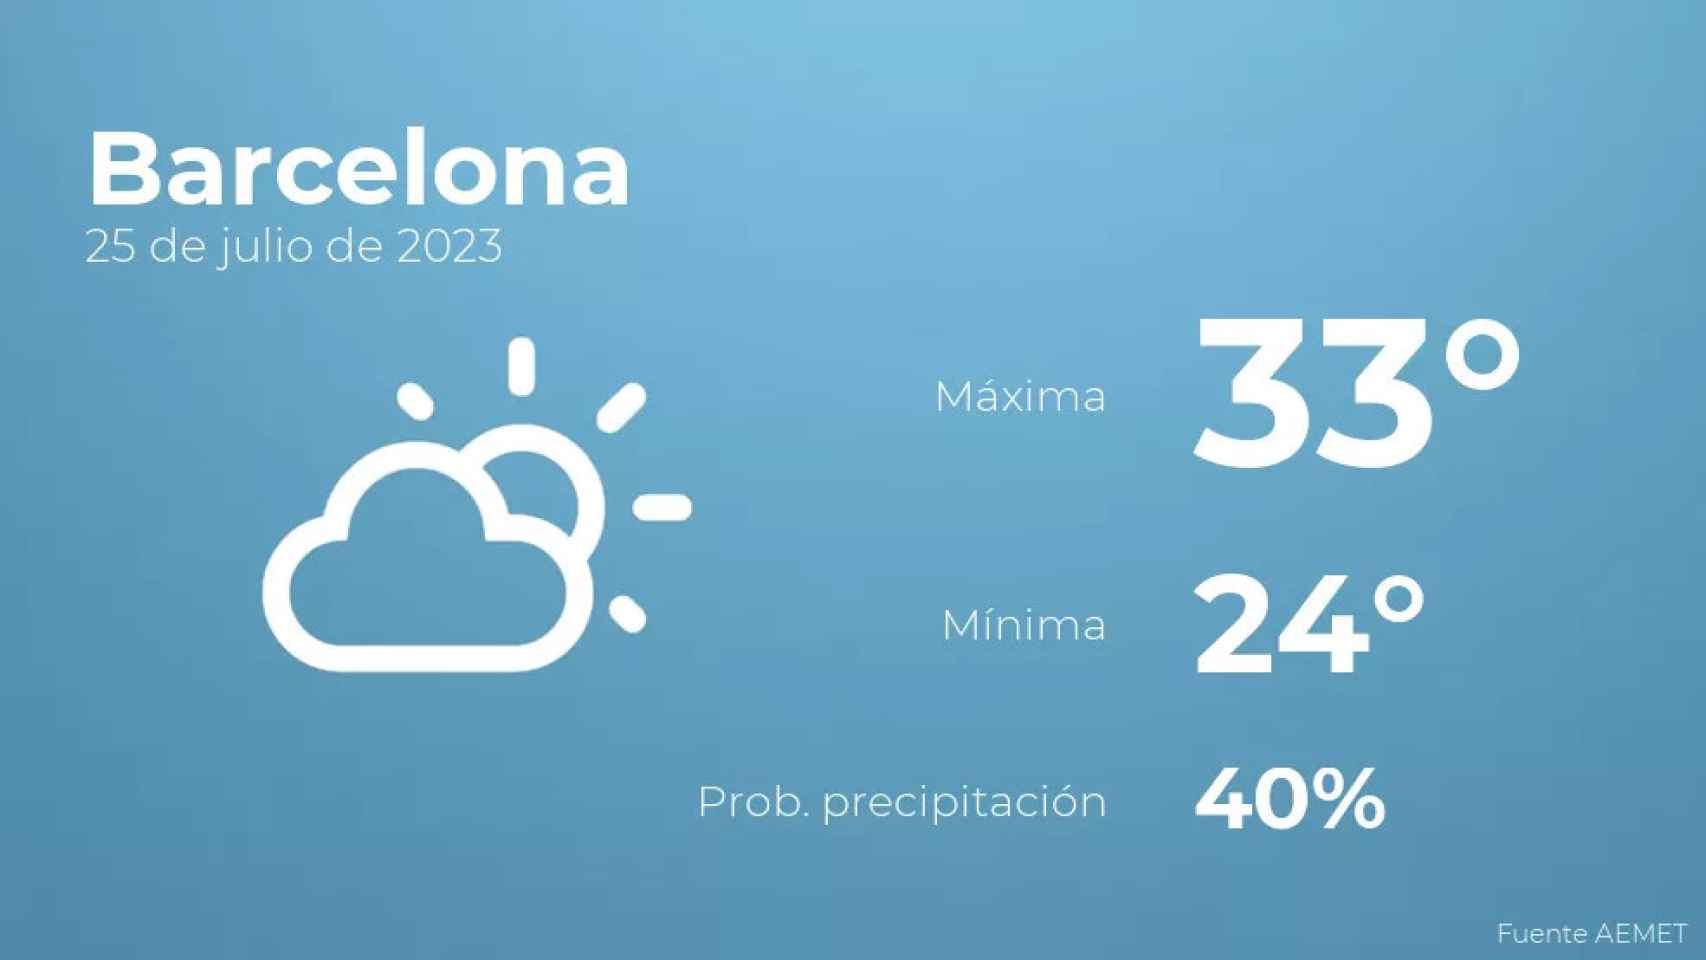 weather?weatherid=13&tempmax=33&tempmin=24&prep=40&city=Barcelona&date=25+de+julio+de+2023&client=CRG&data provider=aemet